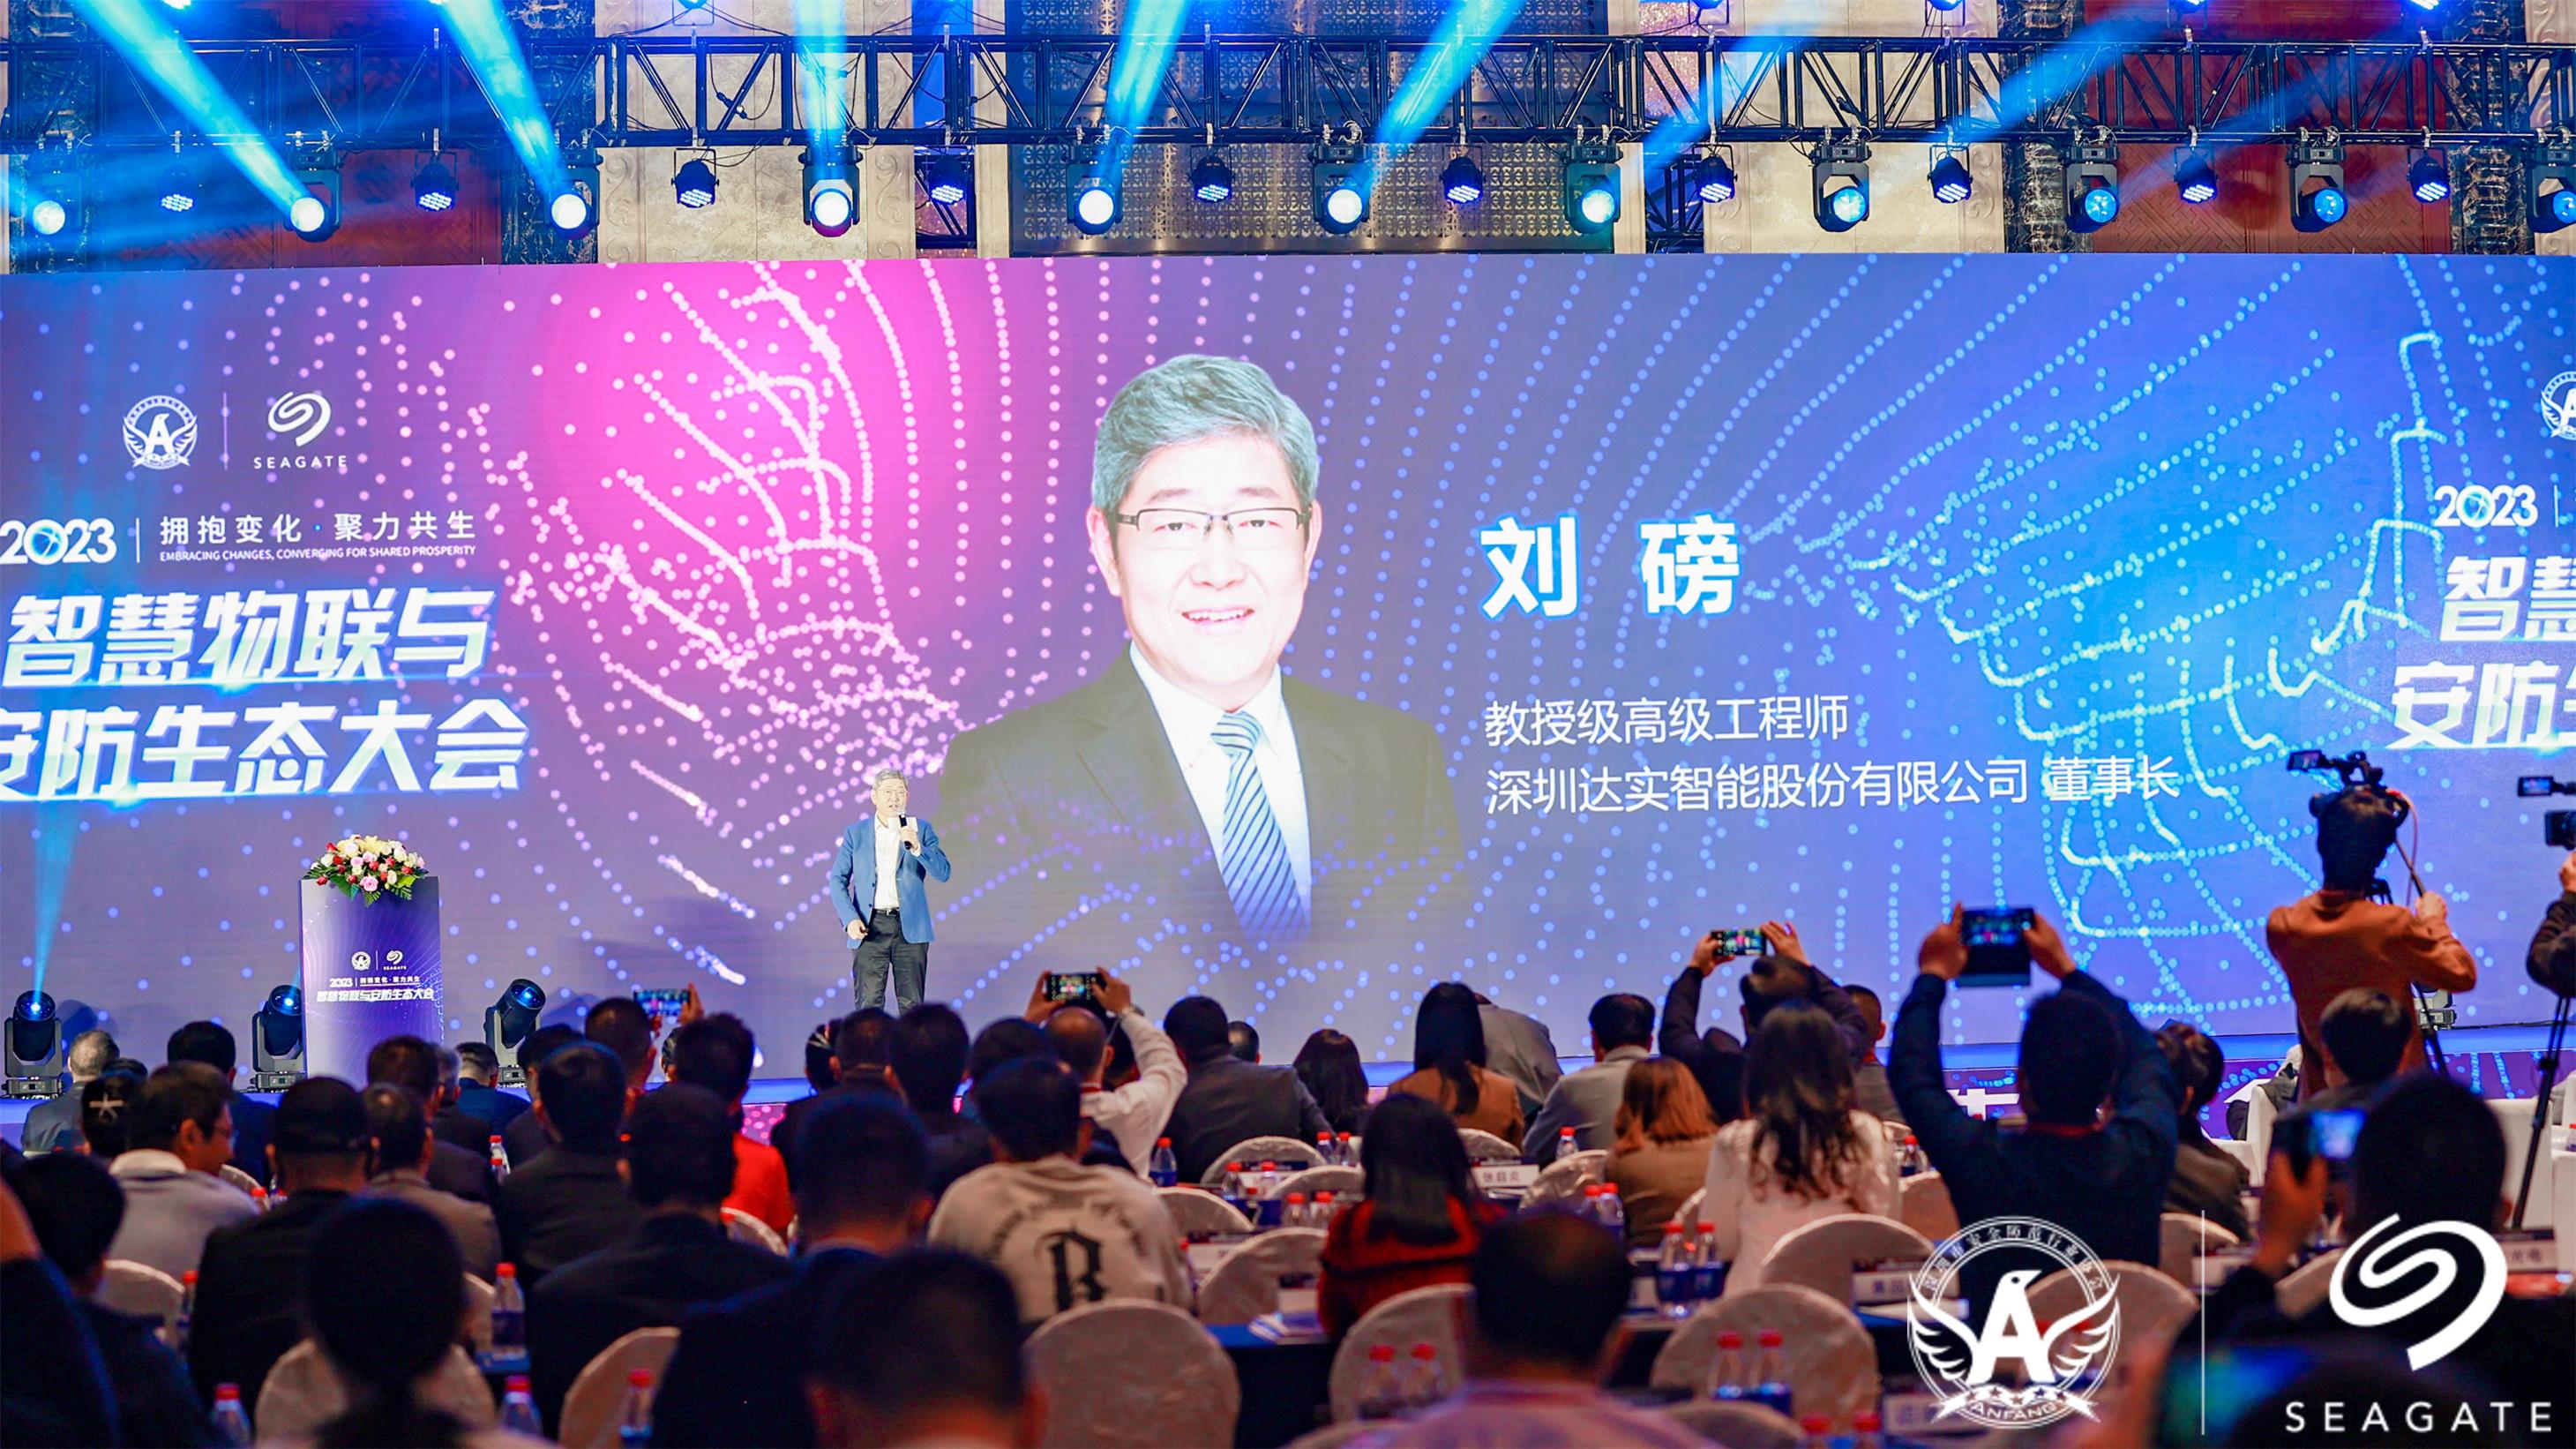 快讯 | 刘磅董事长受邀出席2023智慧物联与安防生态大会并作主题演讲